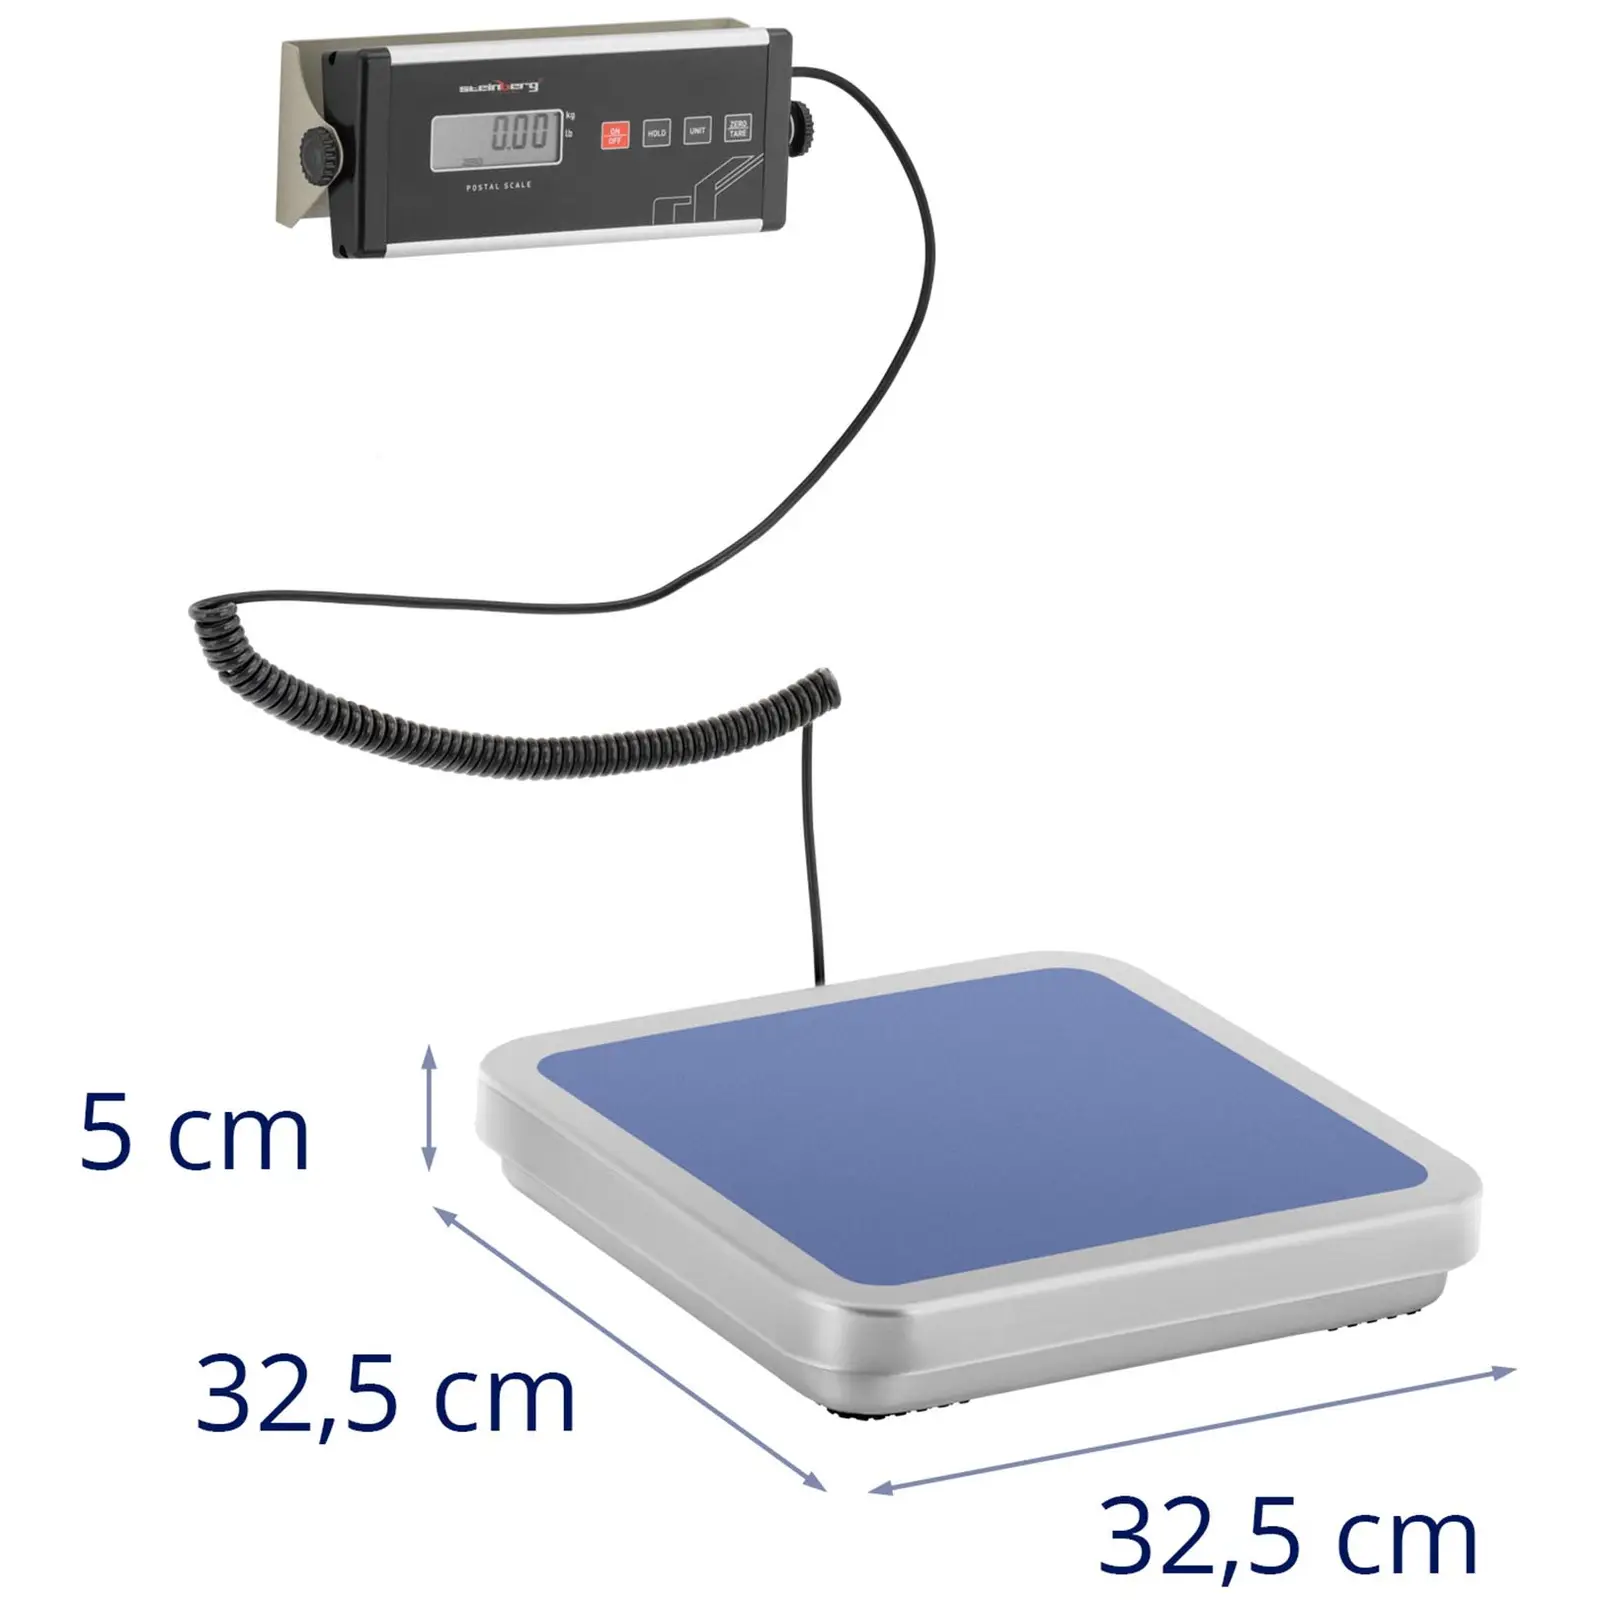 Везна за пакети - 30 кг / 0,01 кг - 31,5 x 32,5 см - външен LCD дисплей